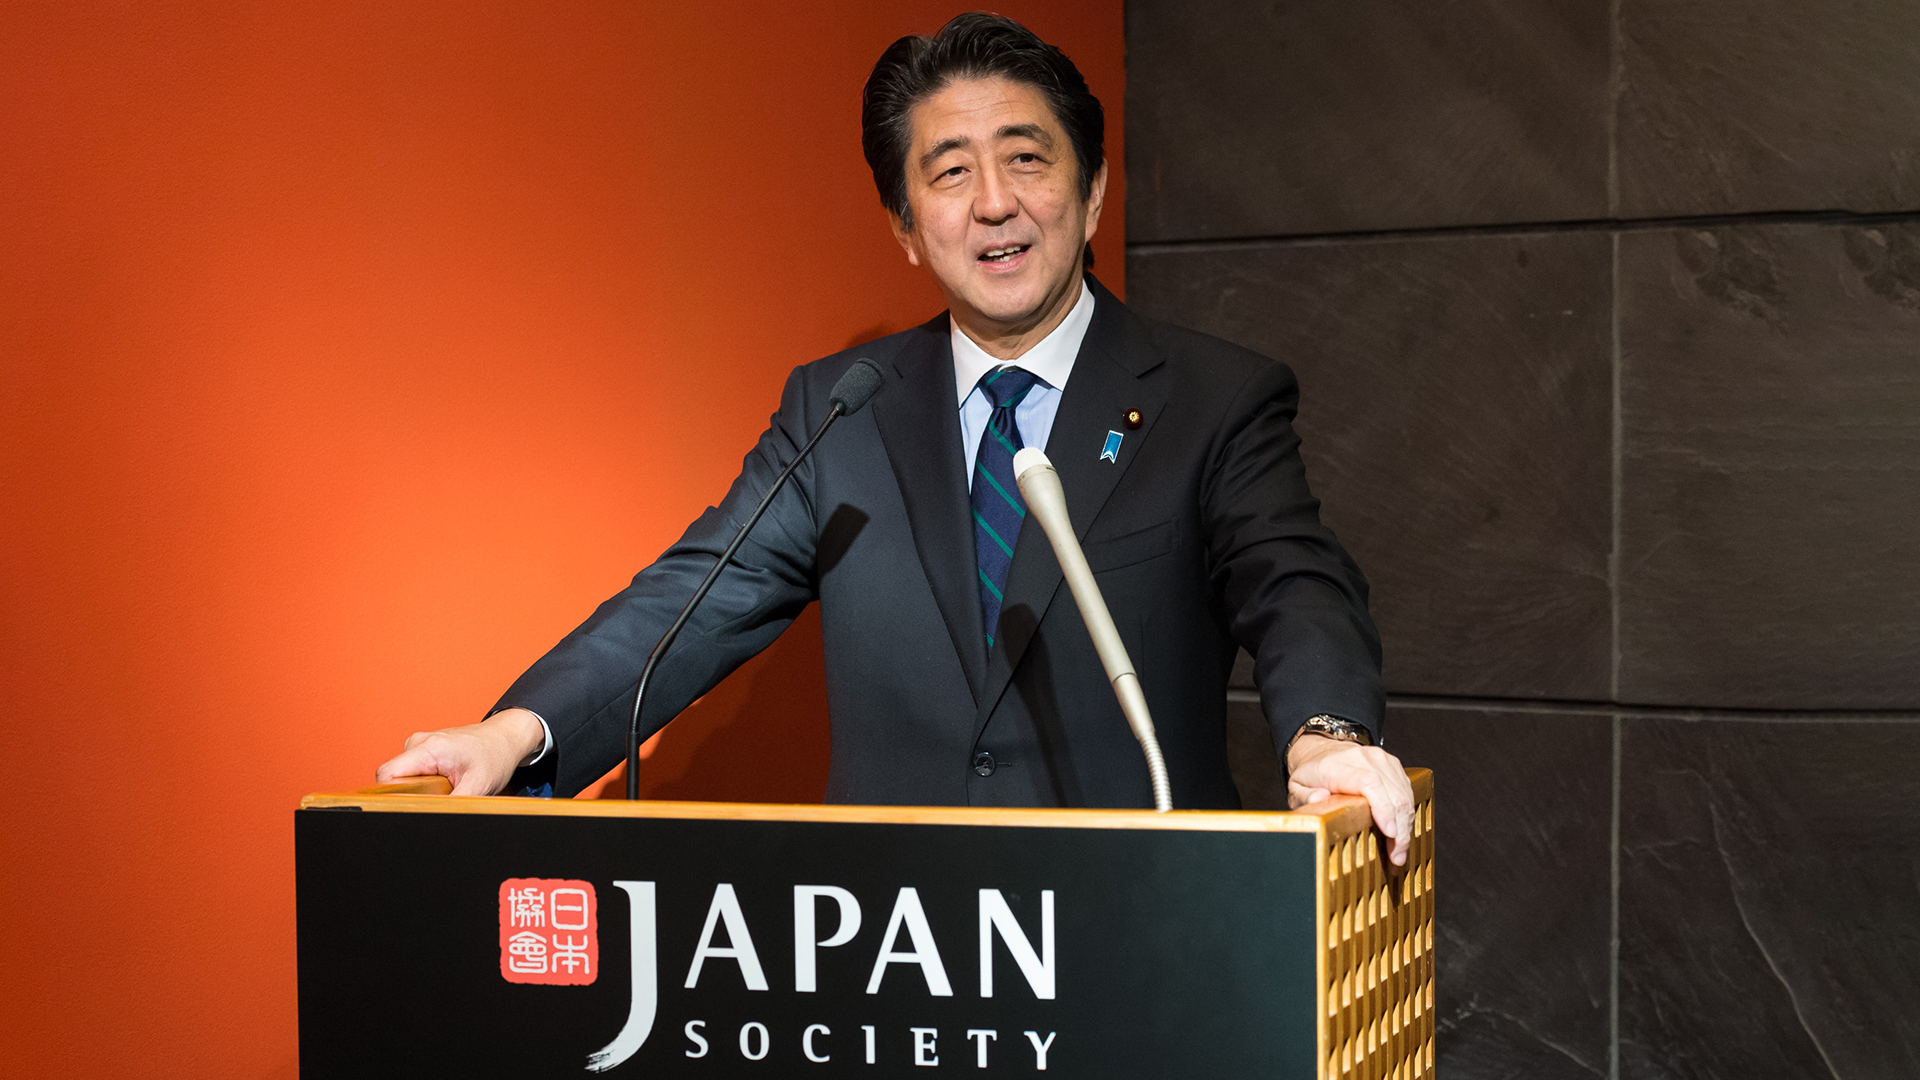 In Memoriam: Former Prime Minister Shinzo Abe